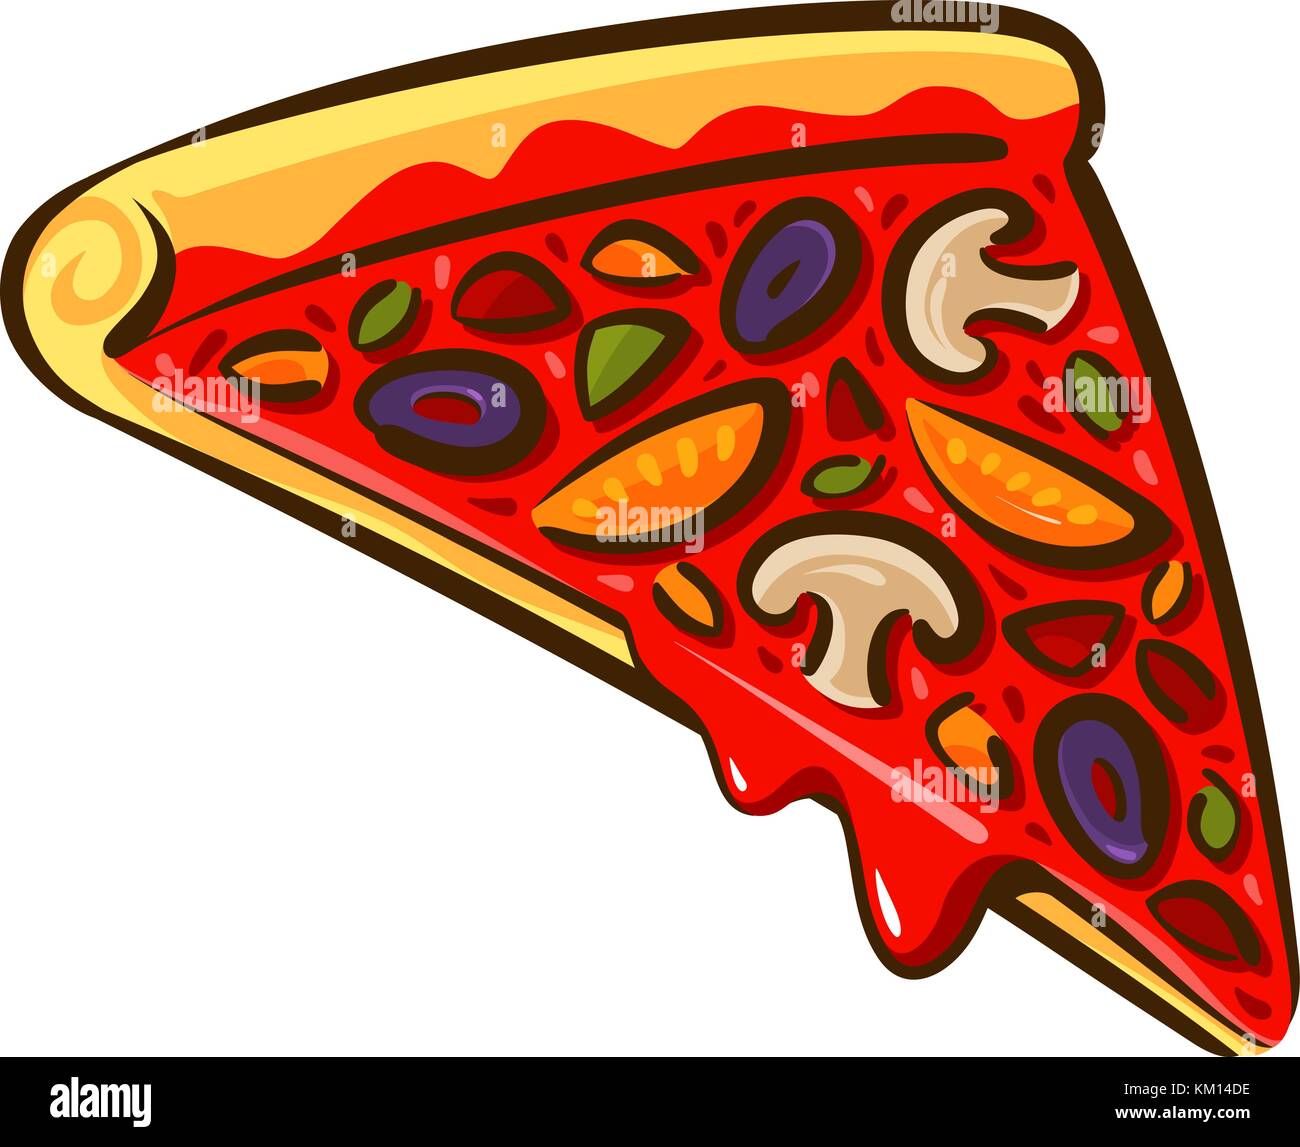 Tranche de pizza. Cuisine italienne, pizzeria, concept de boulangerie. Illustration vectorielle de dessin animé Illustration de Vecteur